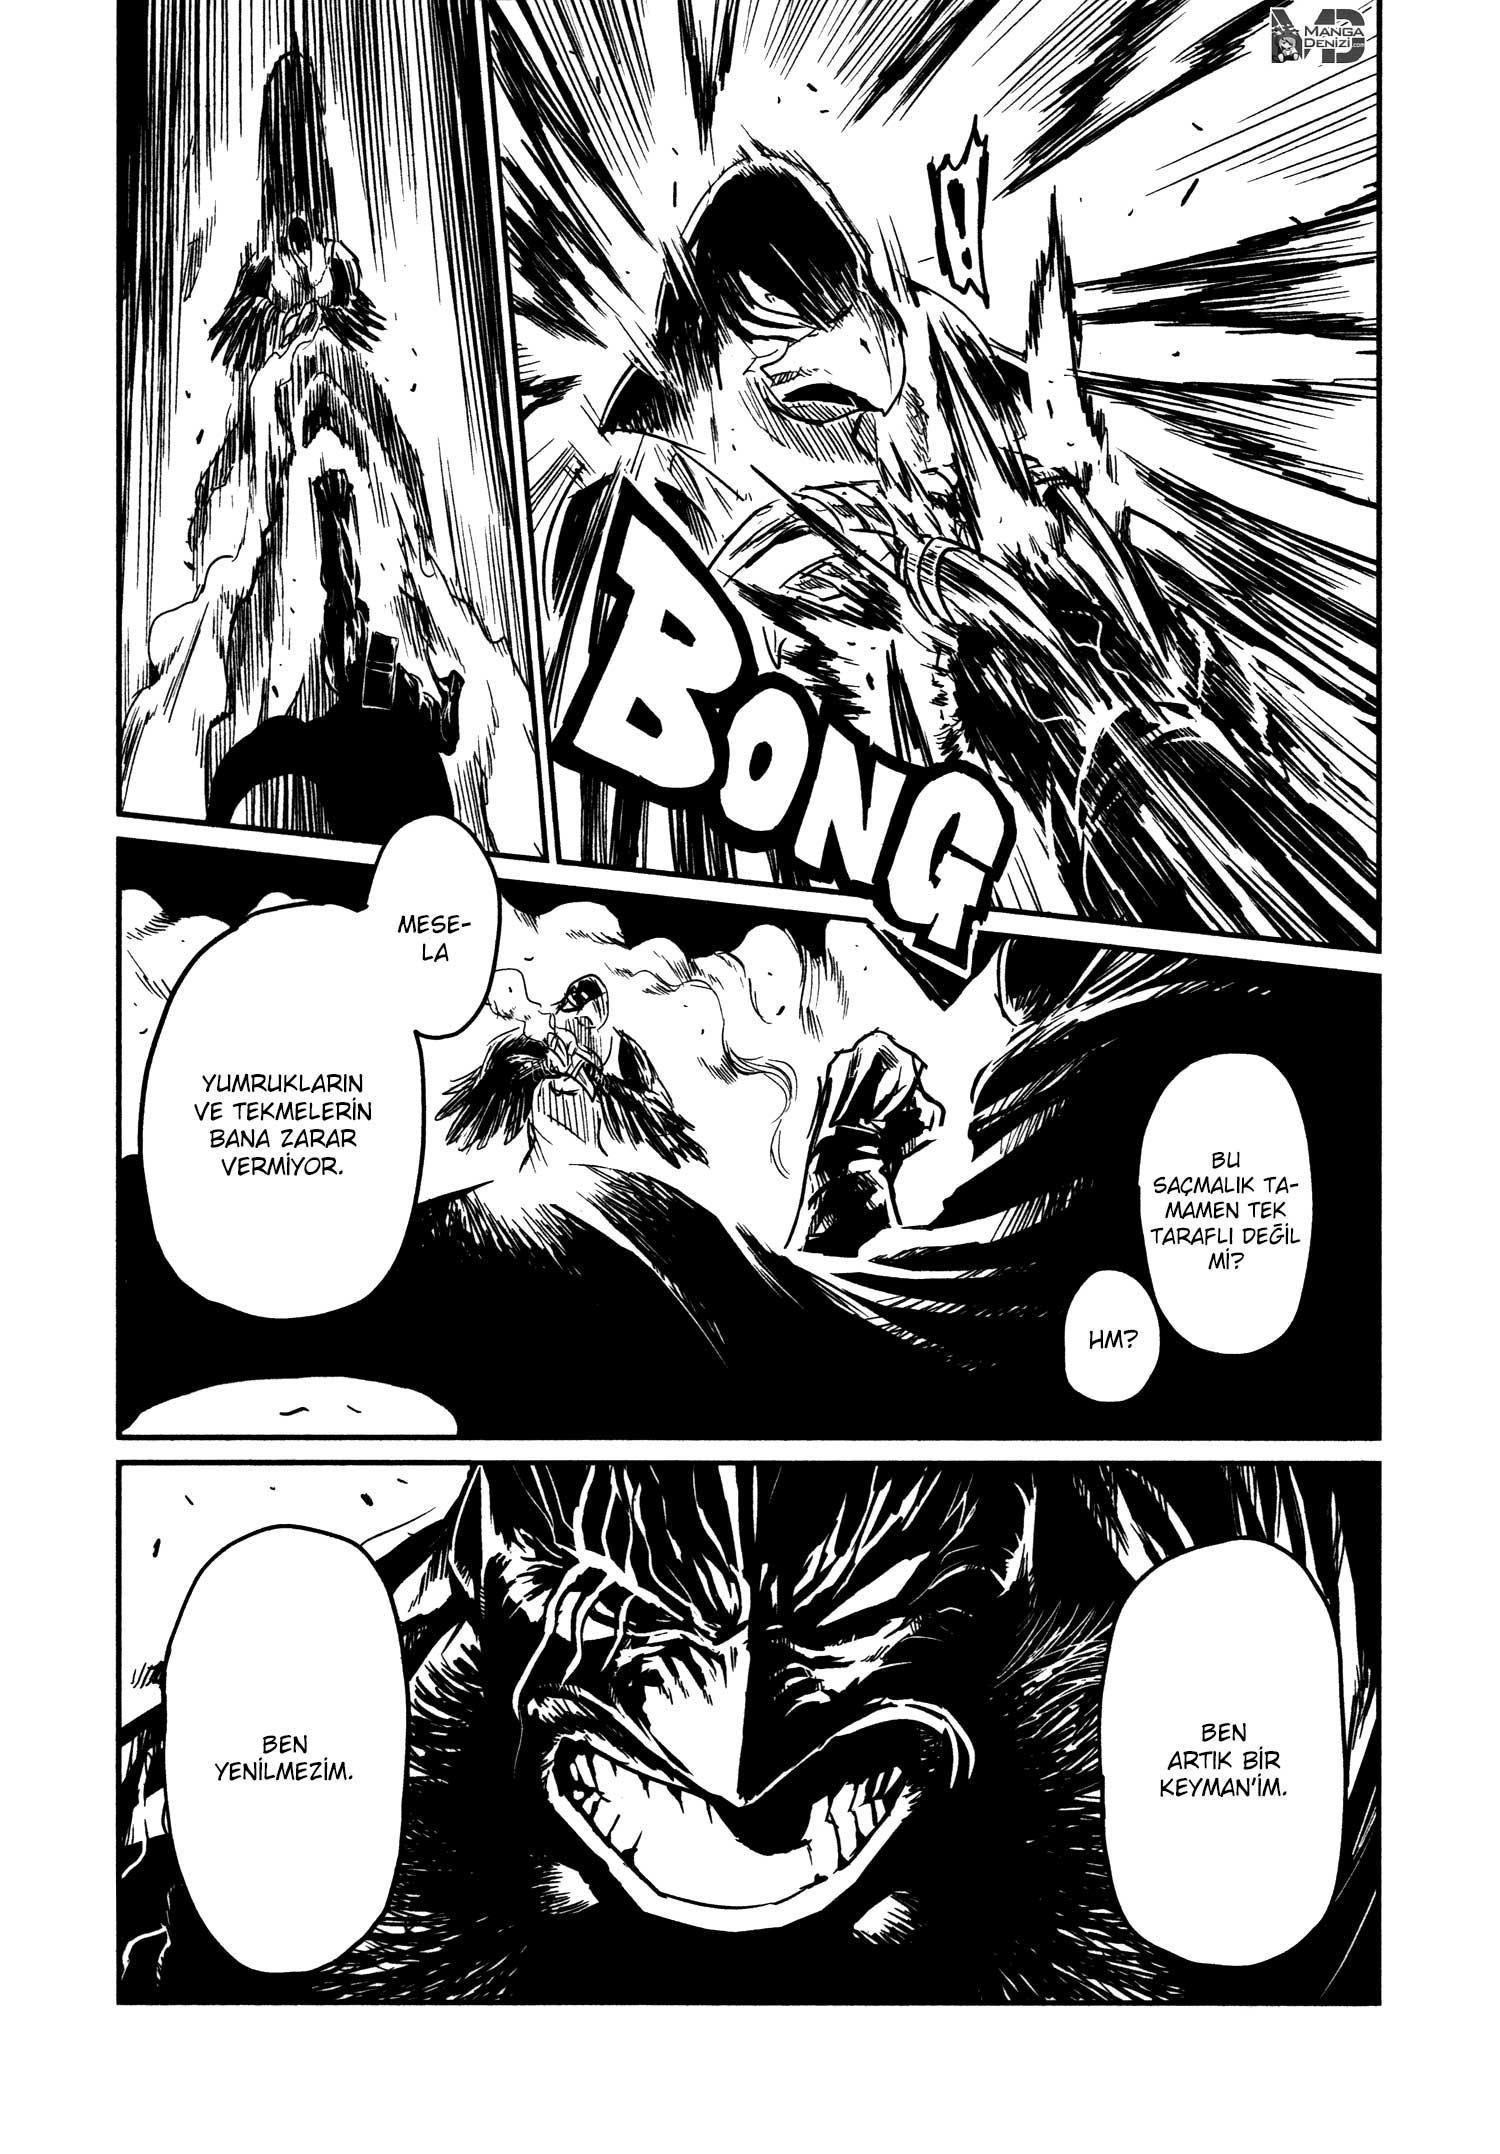 Keyman: The Hand of Judgement mangasının 31 bölümünün 3. sayfasını okuyorsunuz.